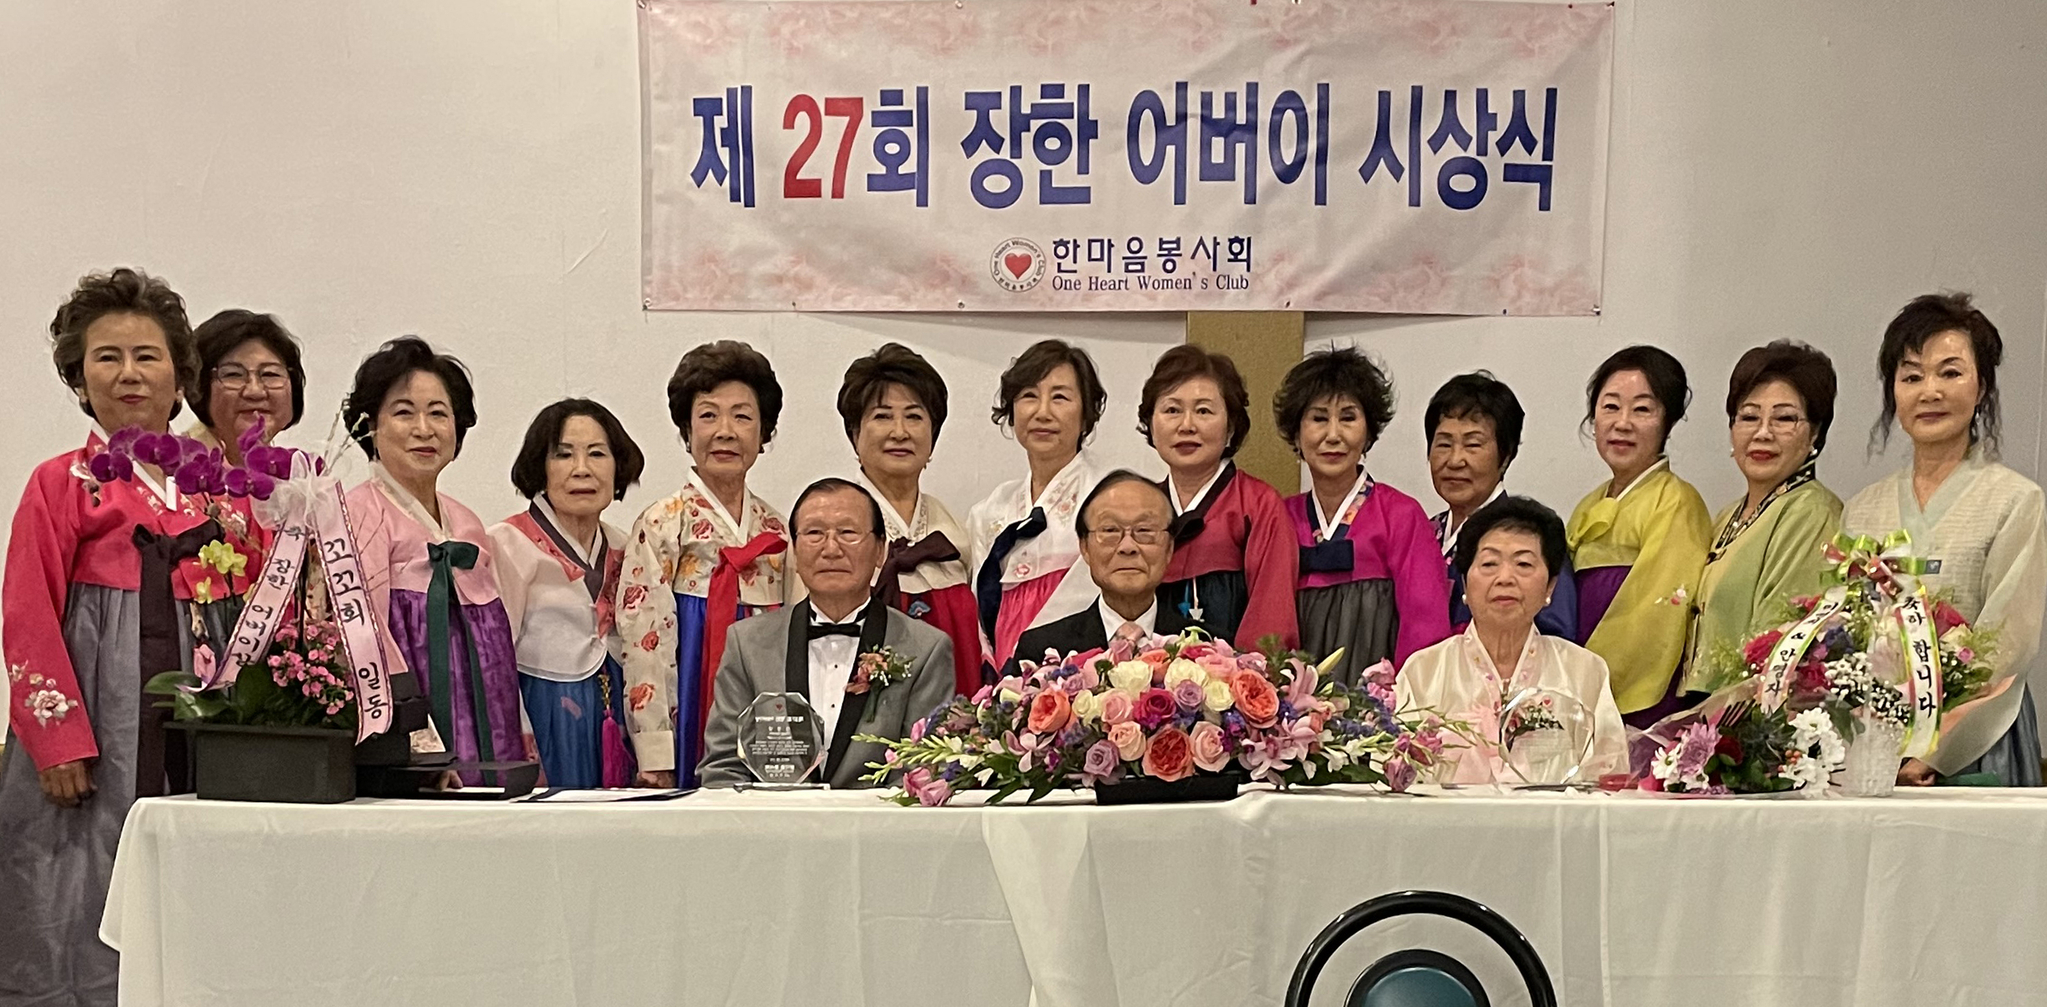 지난 11일 박미애(맨 왼쪽에서 2번째) 회장을 비롯한 한마음봉사회 회원들이 제27회 장한 어버이 시상식 직후 김창달(앉아 있는 이 중 왼쪽부터), 노명수, 홍연섭씨 등 수상자들과 함께 자리했다.